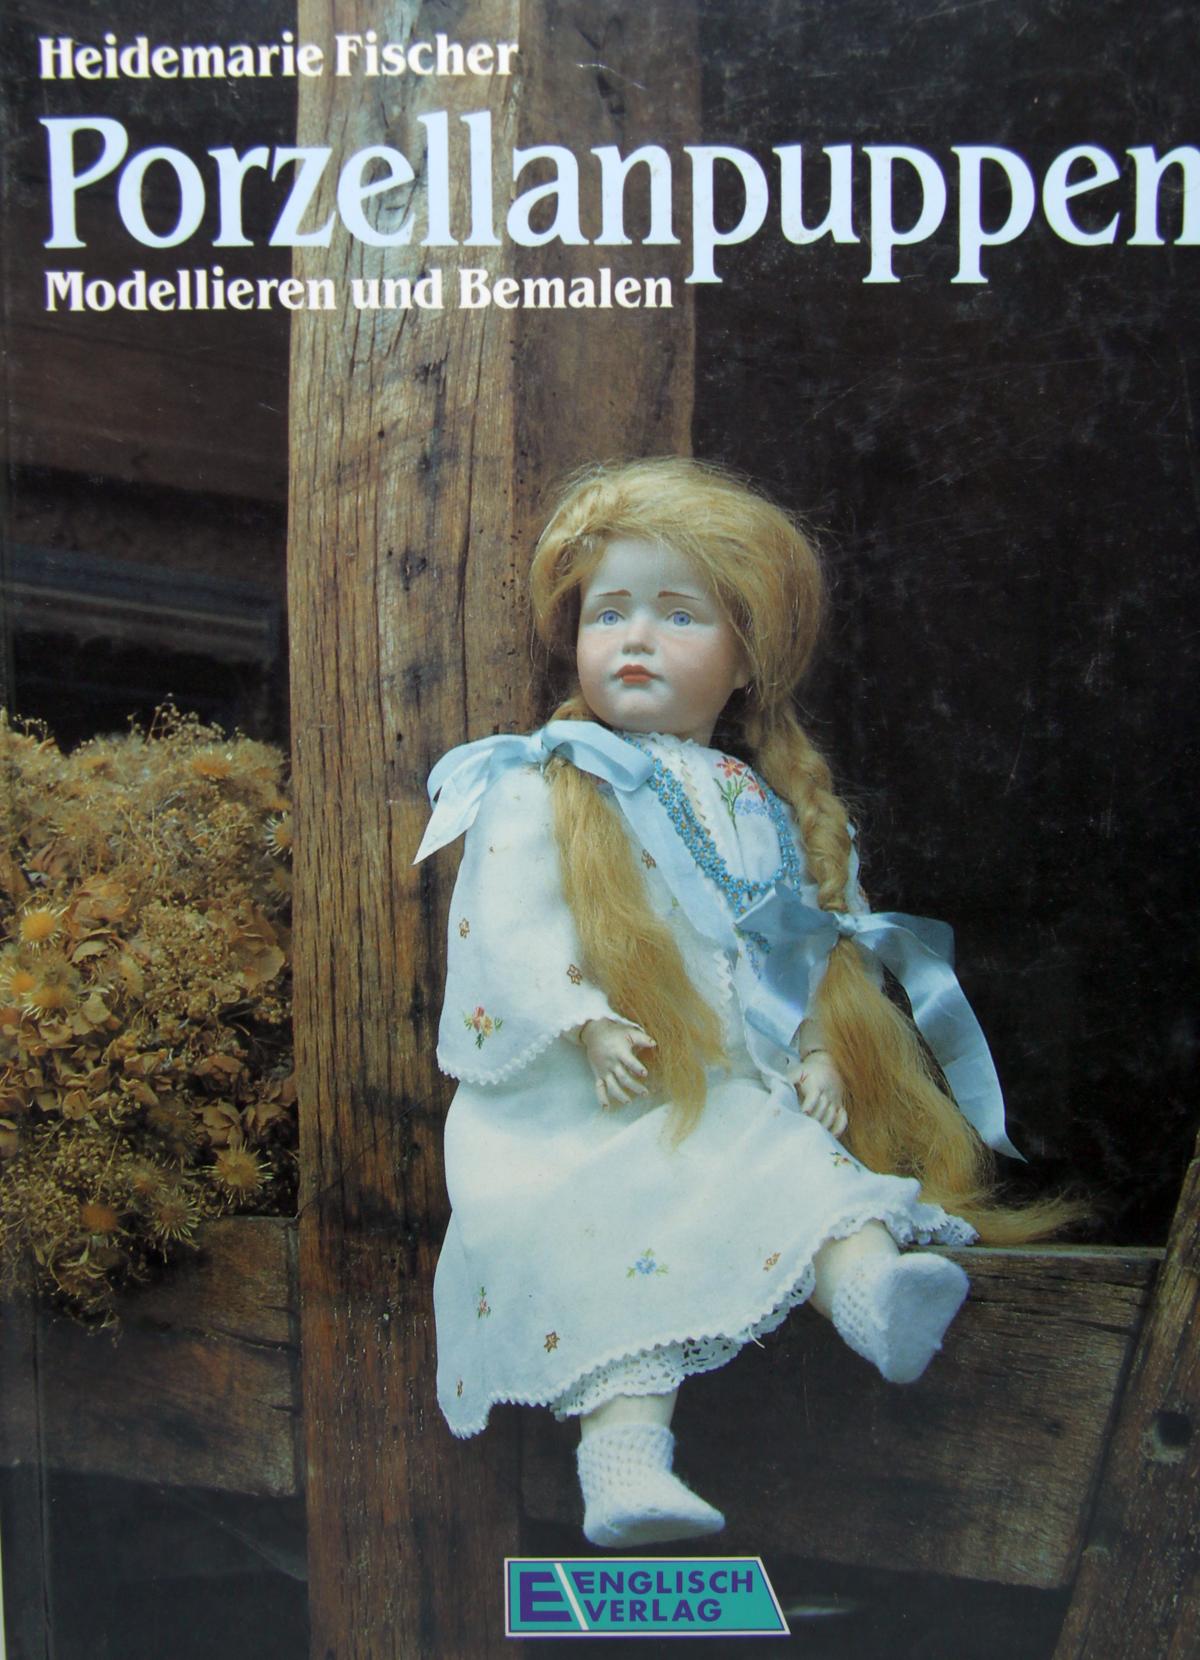 Buch "Porzellanpuppen" Modellieren und Bemalen F. Fischer